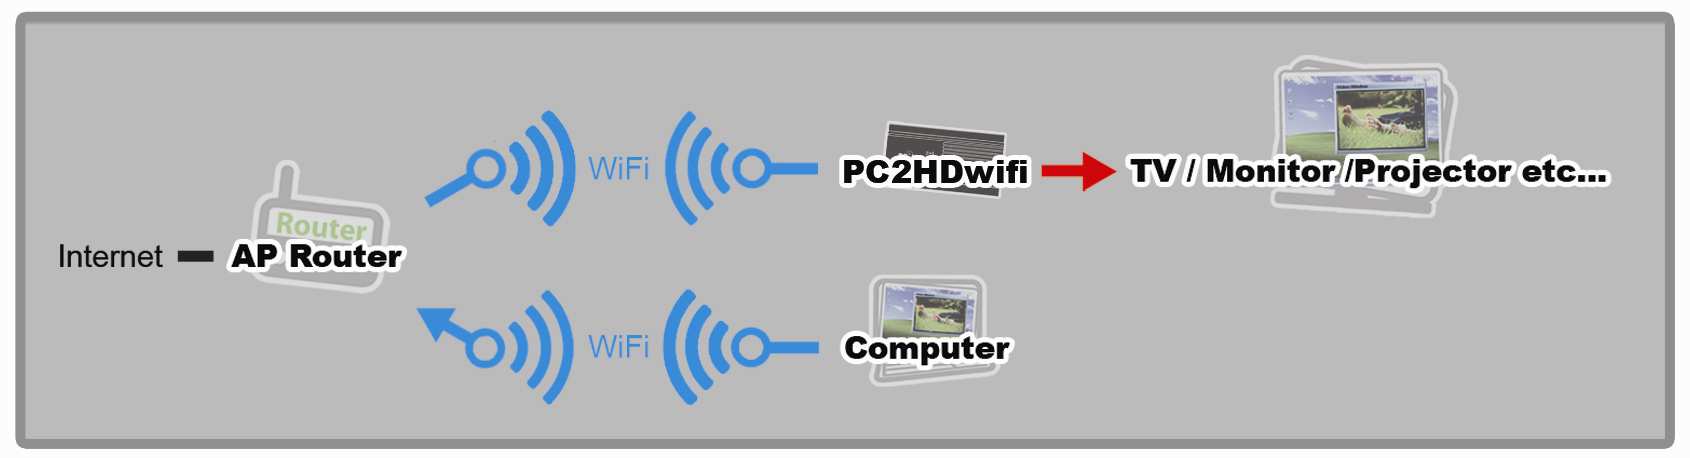 alimentatore al jack DC5V (PC2HDwifi). (3) Accendere PC2HDwifi e attendere circa 40~60 secondi dopo di che apparirà la schermata Ready.